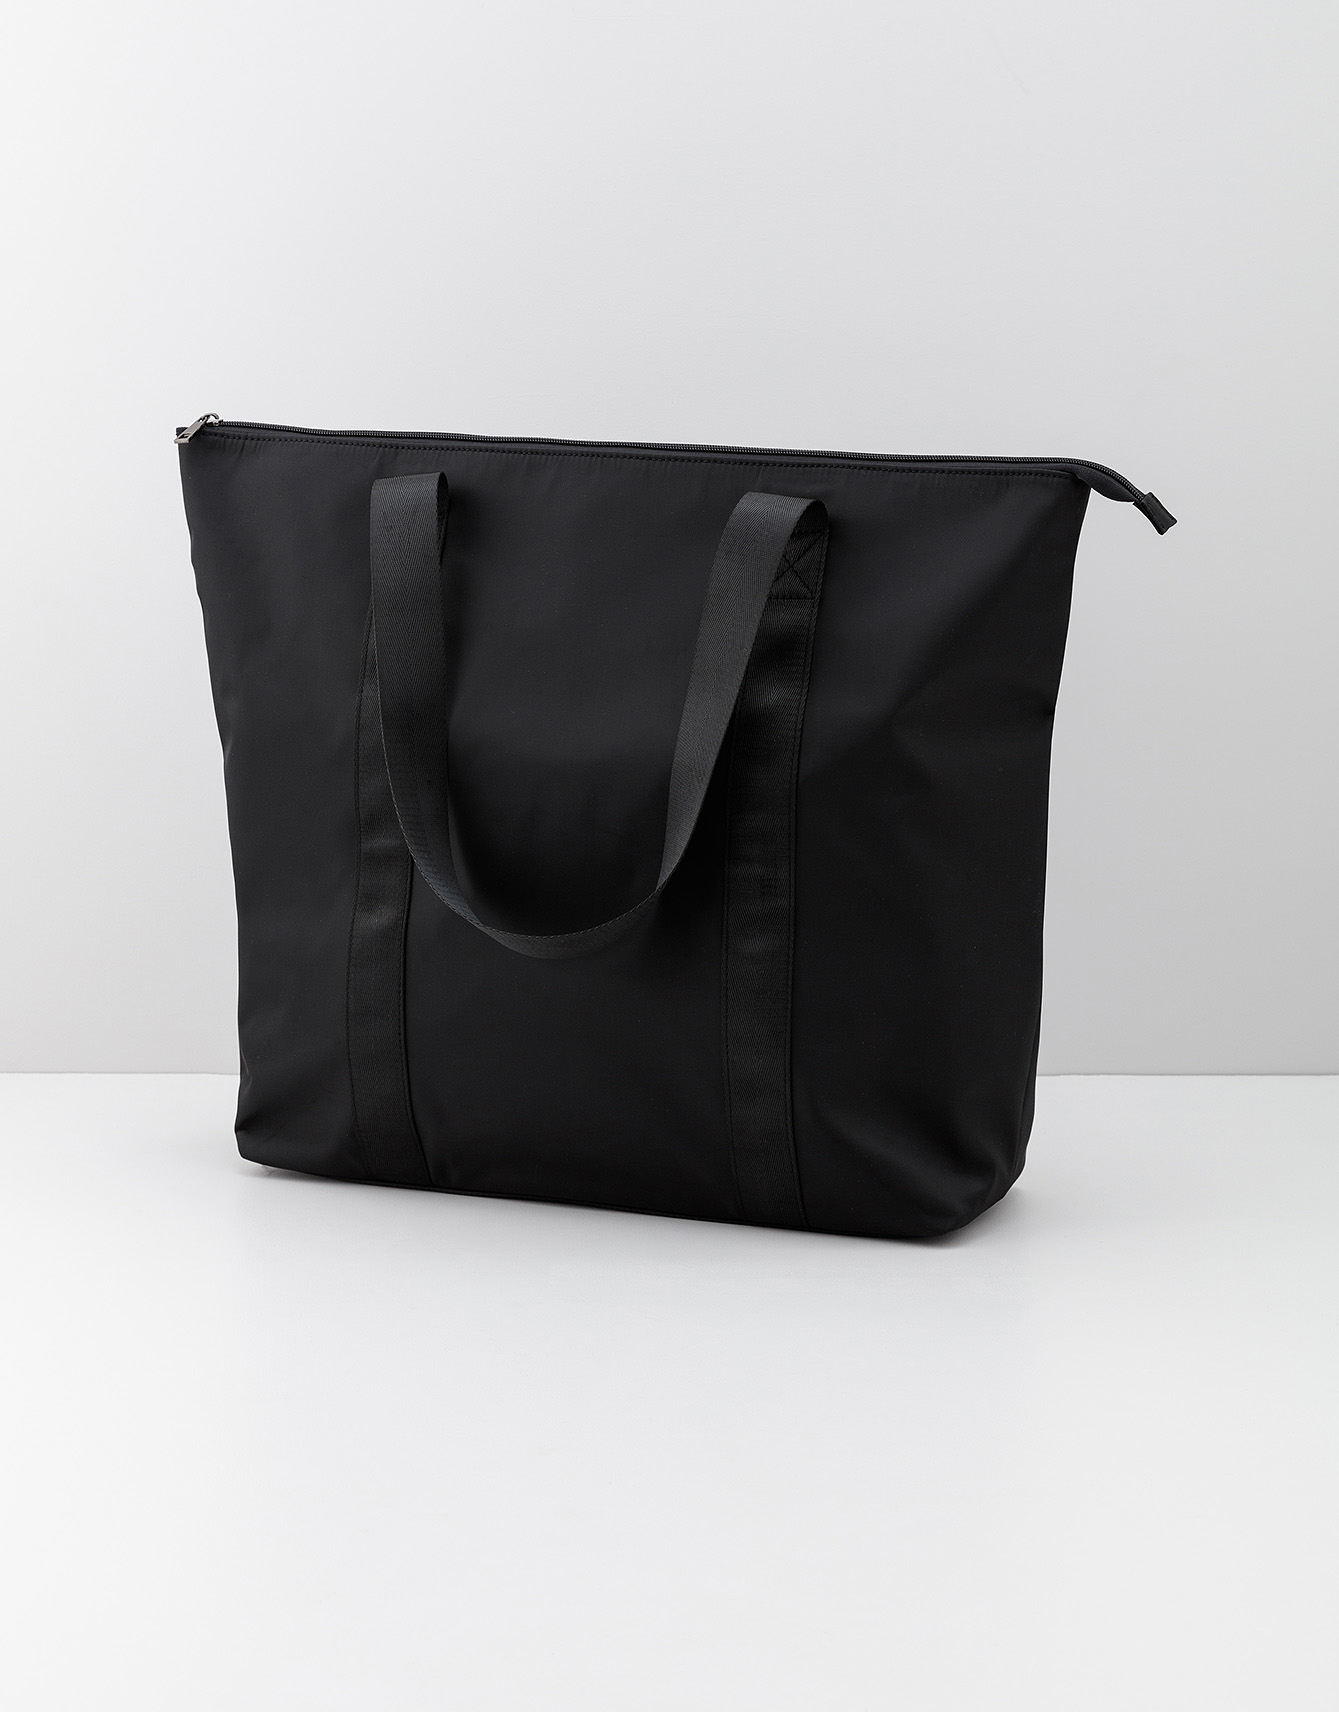 Solid black weekend bag